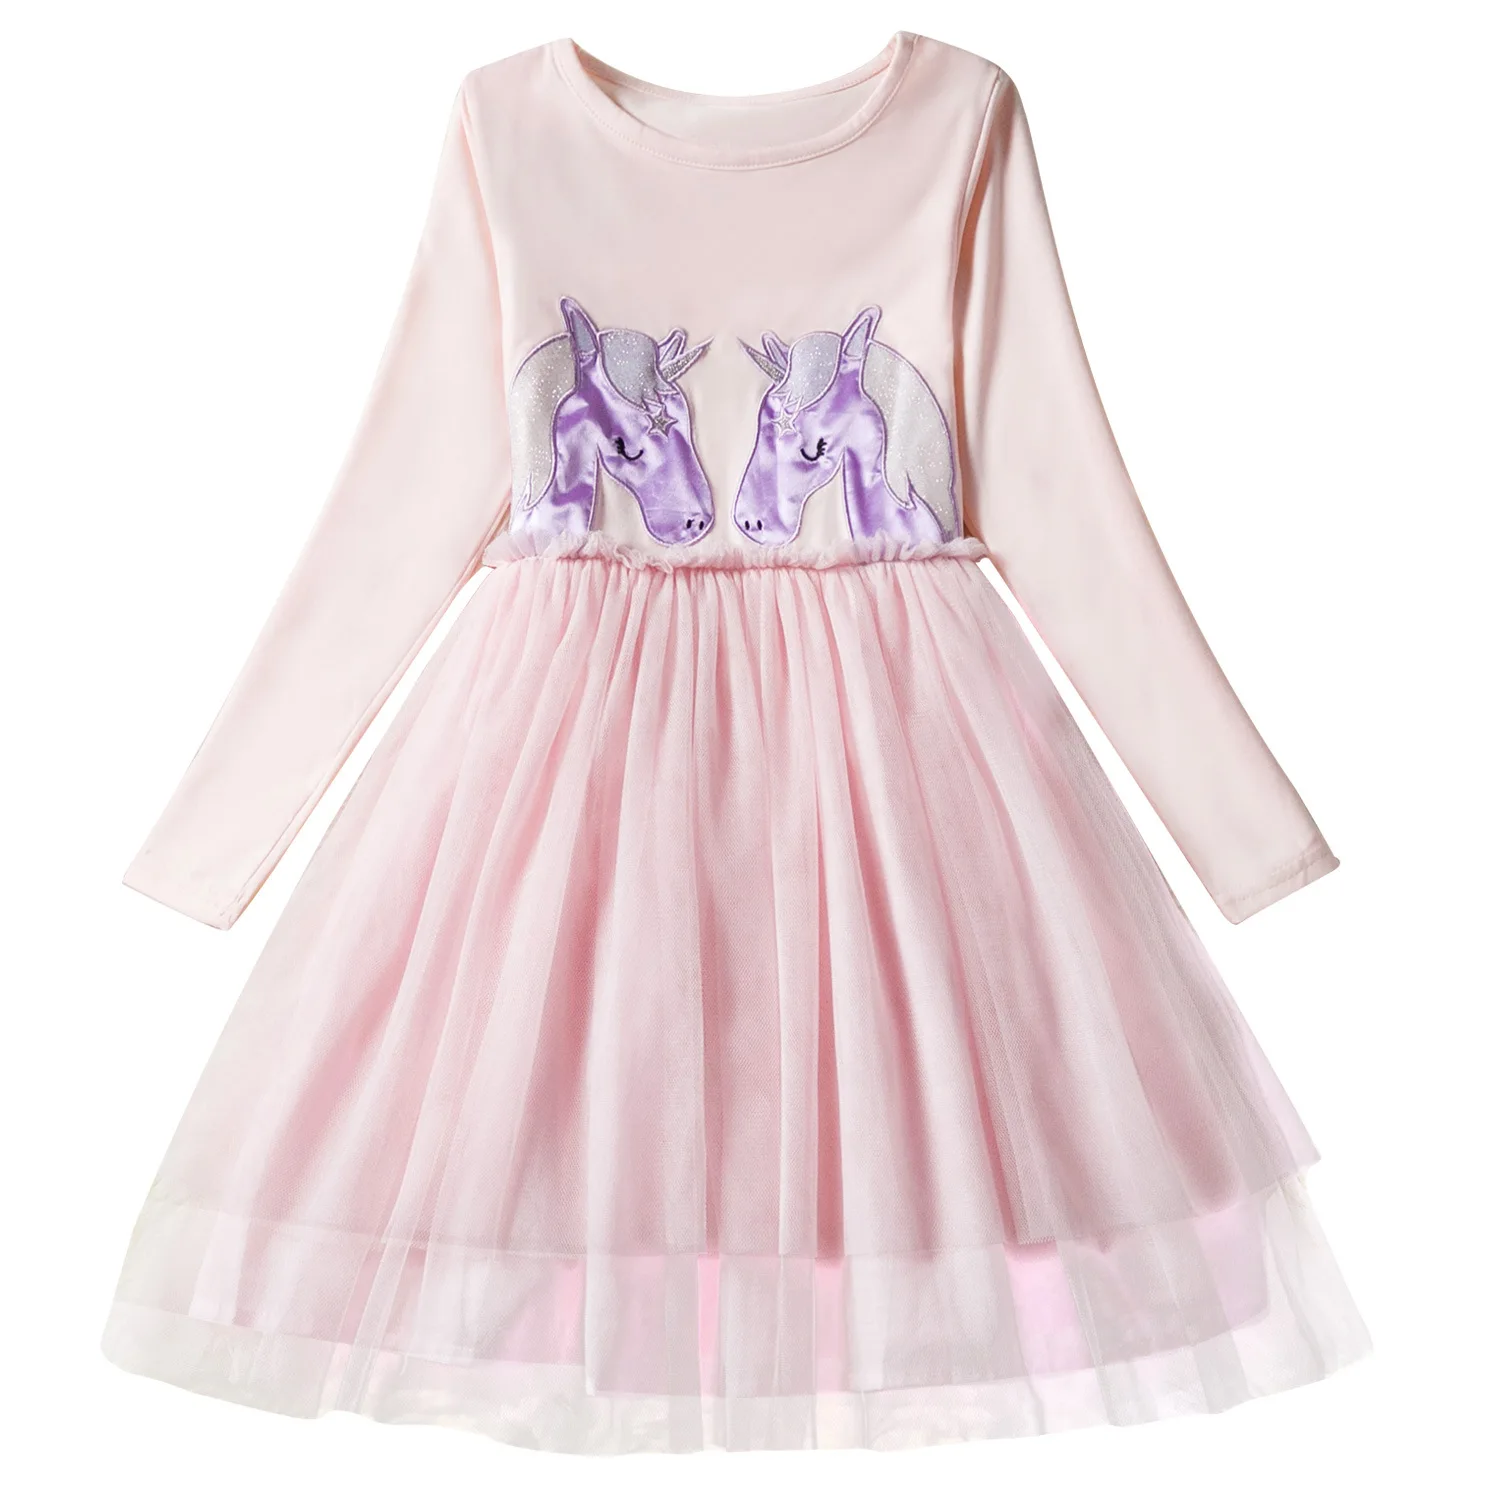 Одежда для девочек от 3 до 8 лет осеннее платье принцессы Эльзы рождественское платье с длинными рукавами и рисунком для девочек детская одежда meninas vestidos - Цвет: E3